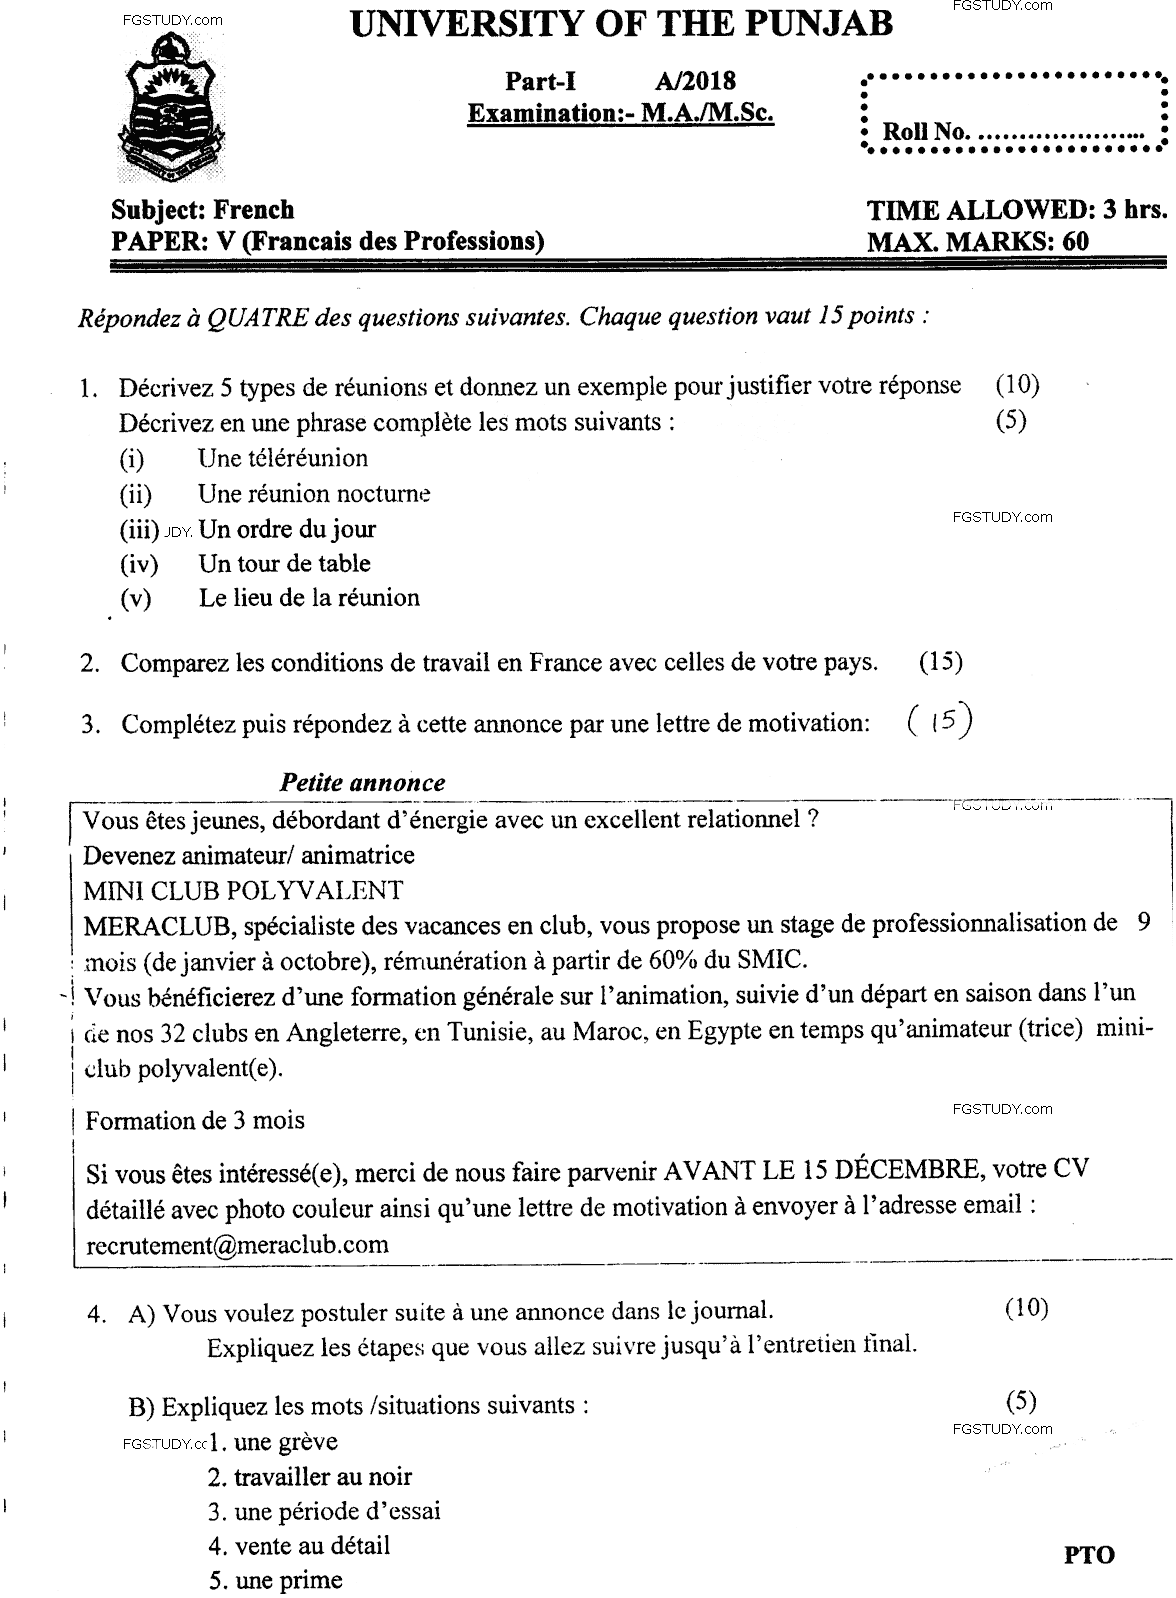 Ma Part 1 French Francais Des Professions Past Paper 2018 Punjab University